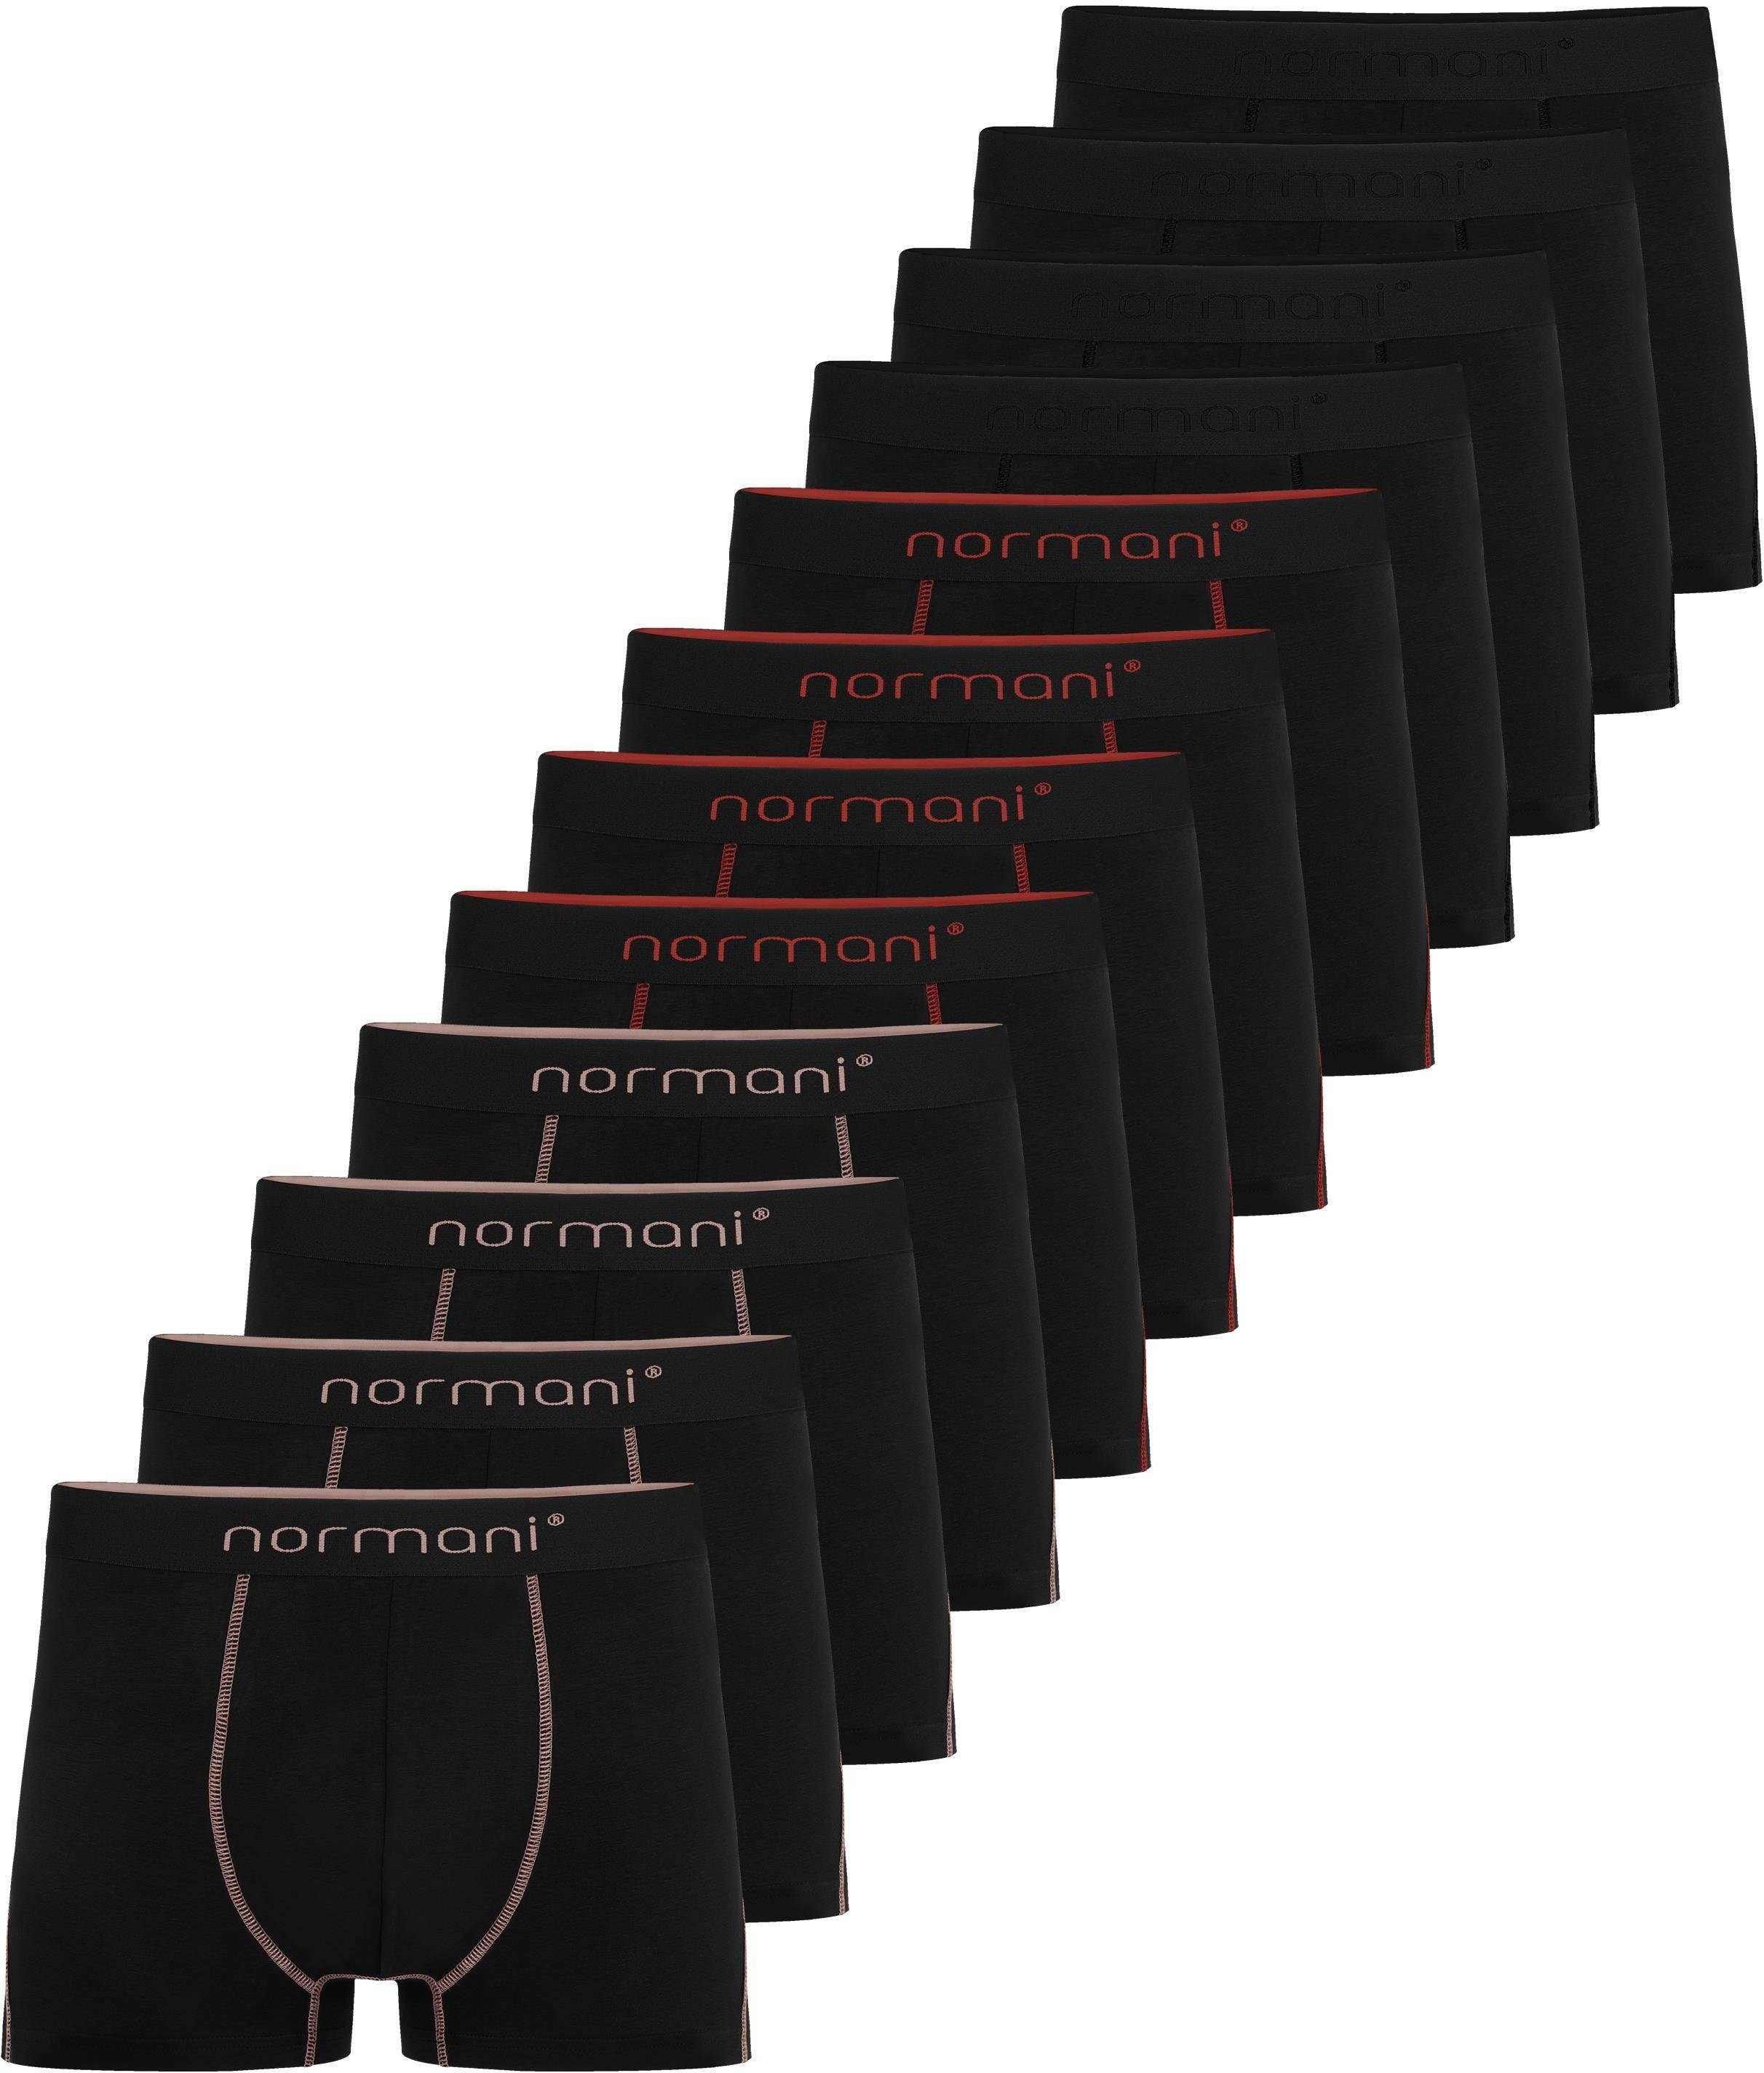 normani Boxershorts 12 x Herren Baumwoll-Boxershorts Unterhose aus atmungsaktiver Baumwolle für Männer Lachs/Rot/Schwarz